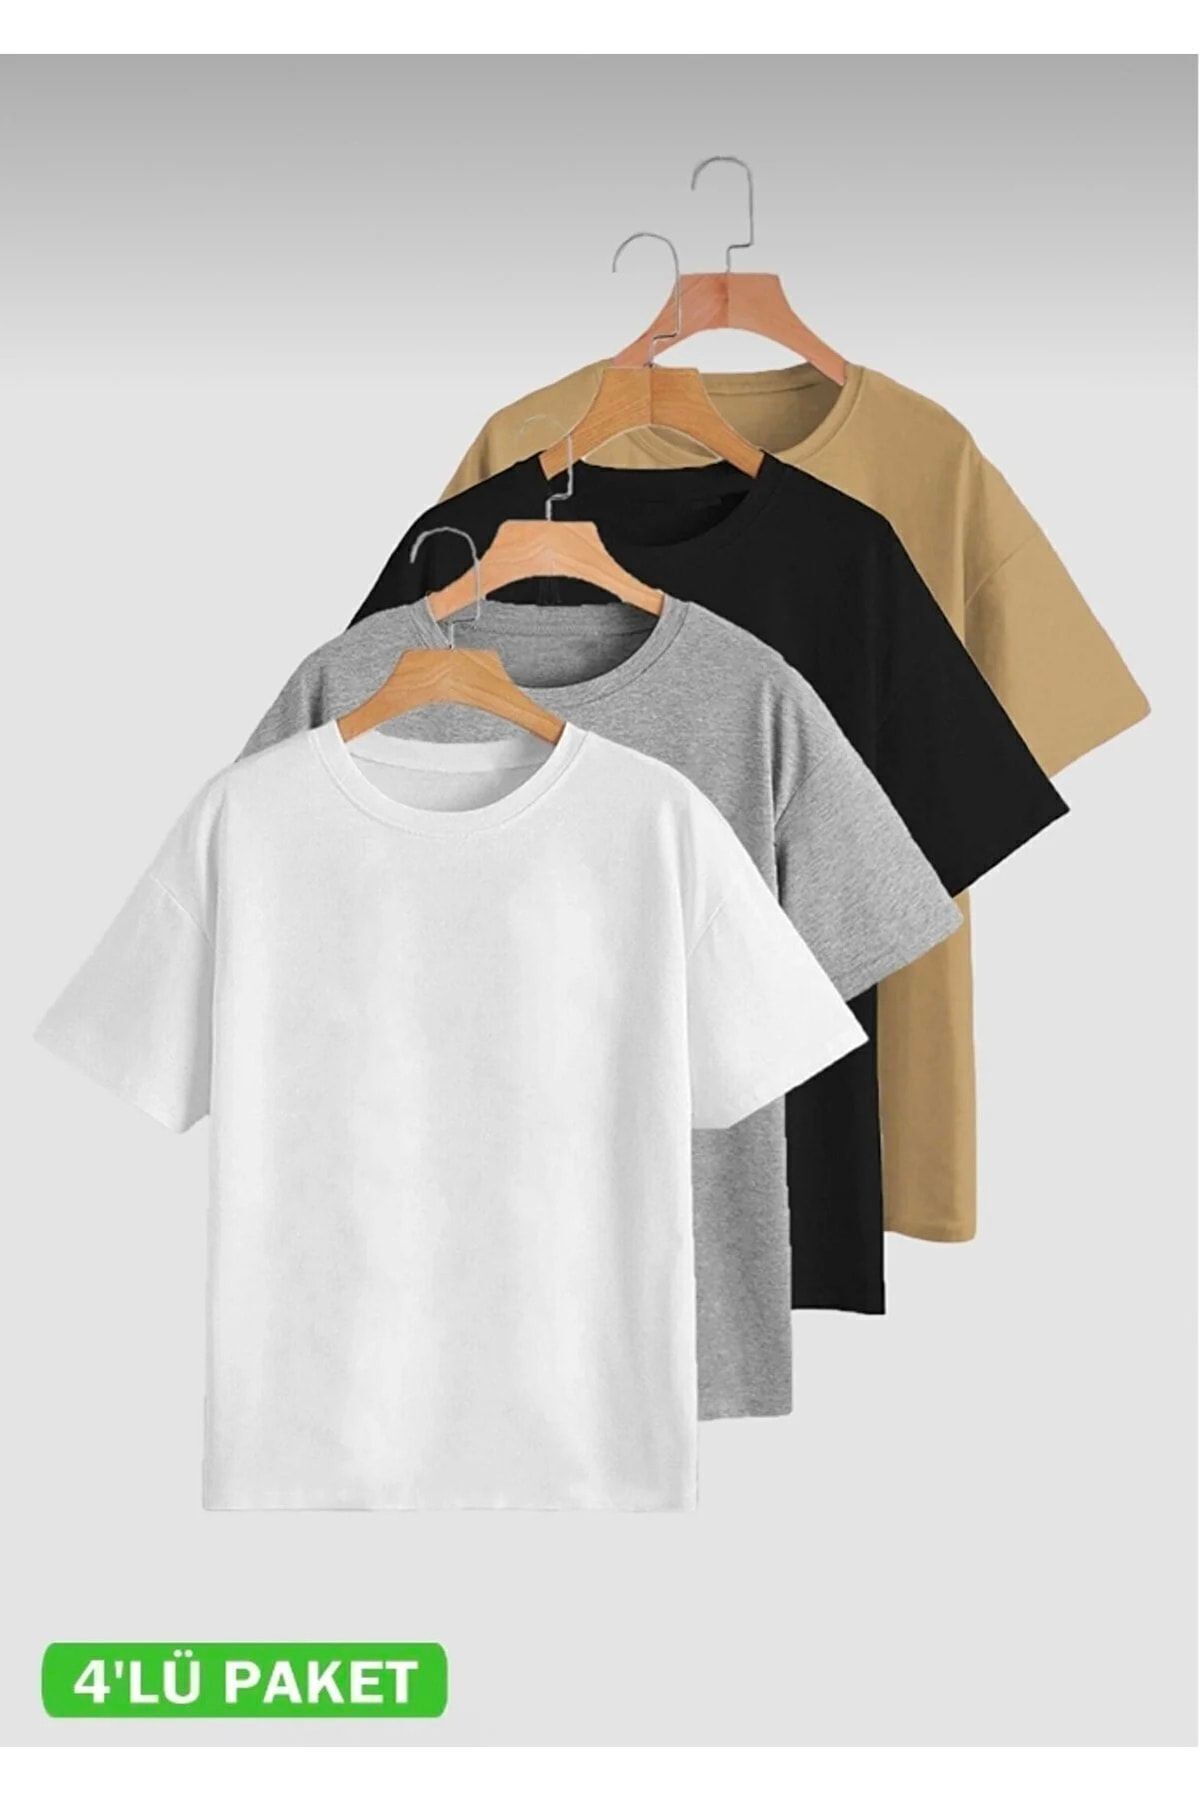 JAKARLI Unisex 4’lü Hazır Paket Siyah - Gri - Beyaz - Kahve Slimfitt T-shirt